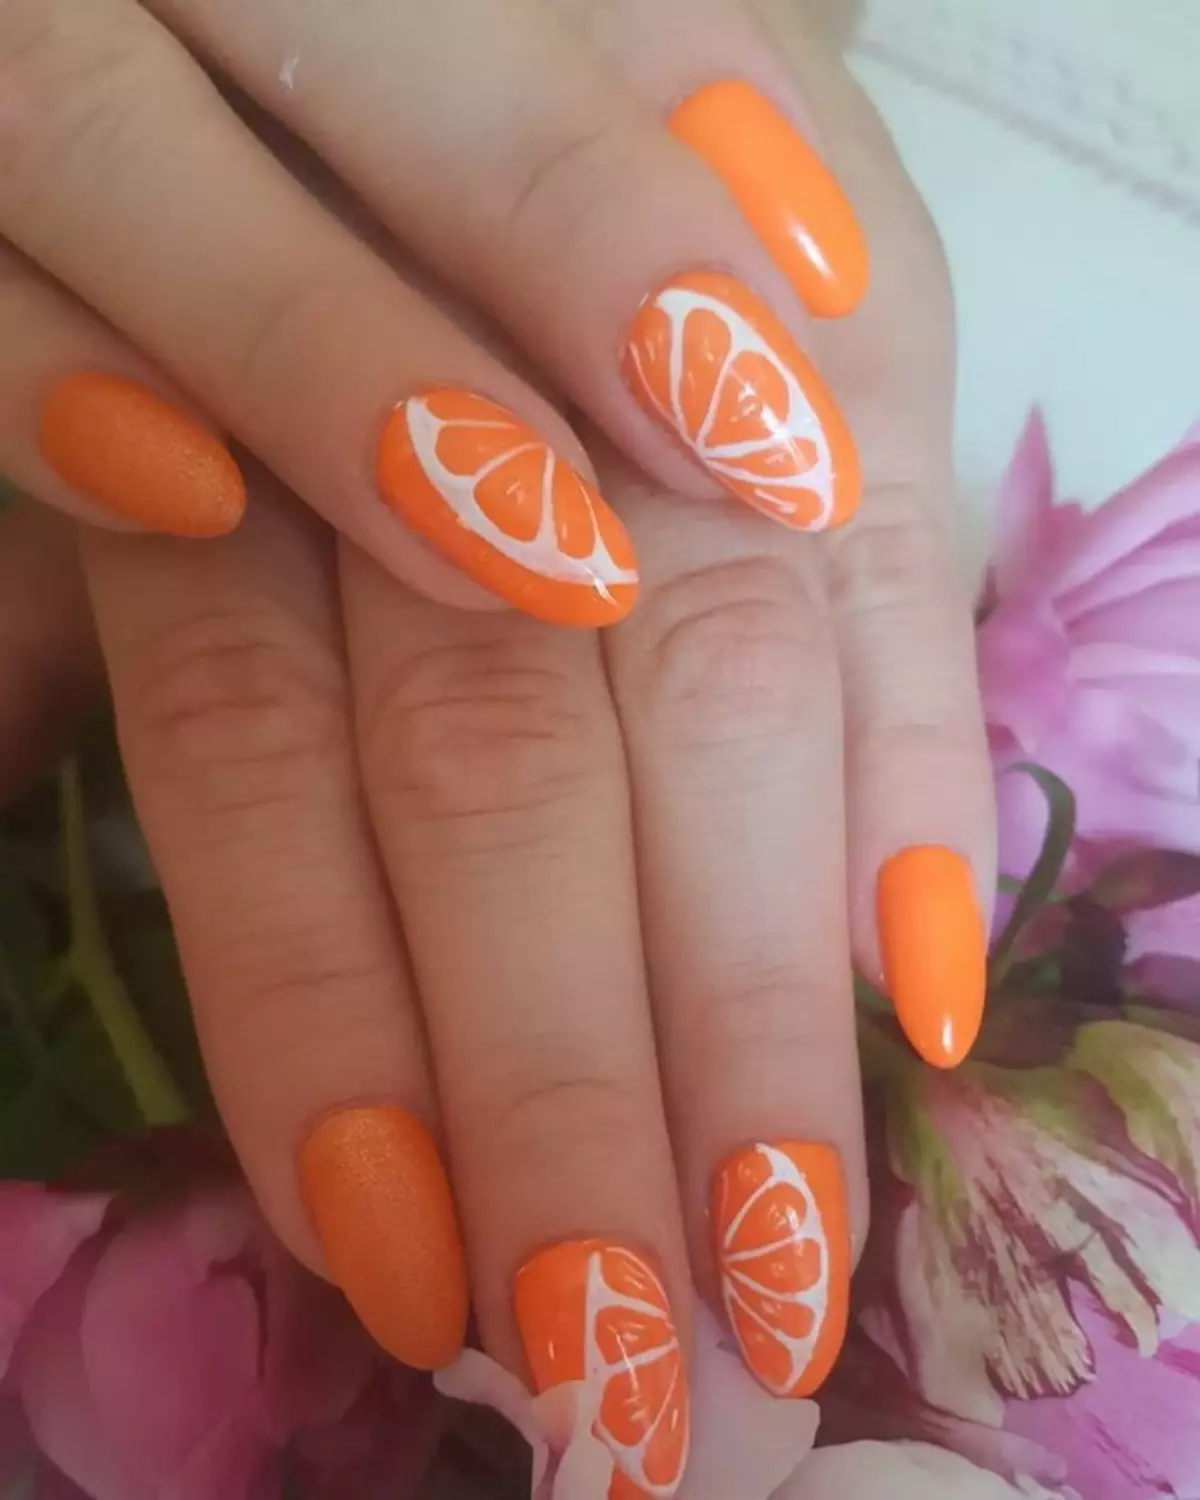 爪の柑橘類（39写真）：レモンスライス、ライム、グレープフルーツ、オレンジとの段階的なマニキュア技術。デザインオプション 6390_4